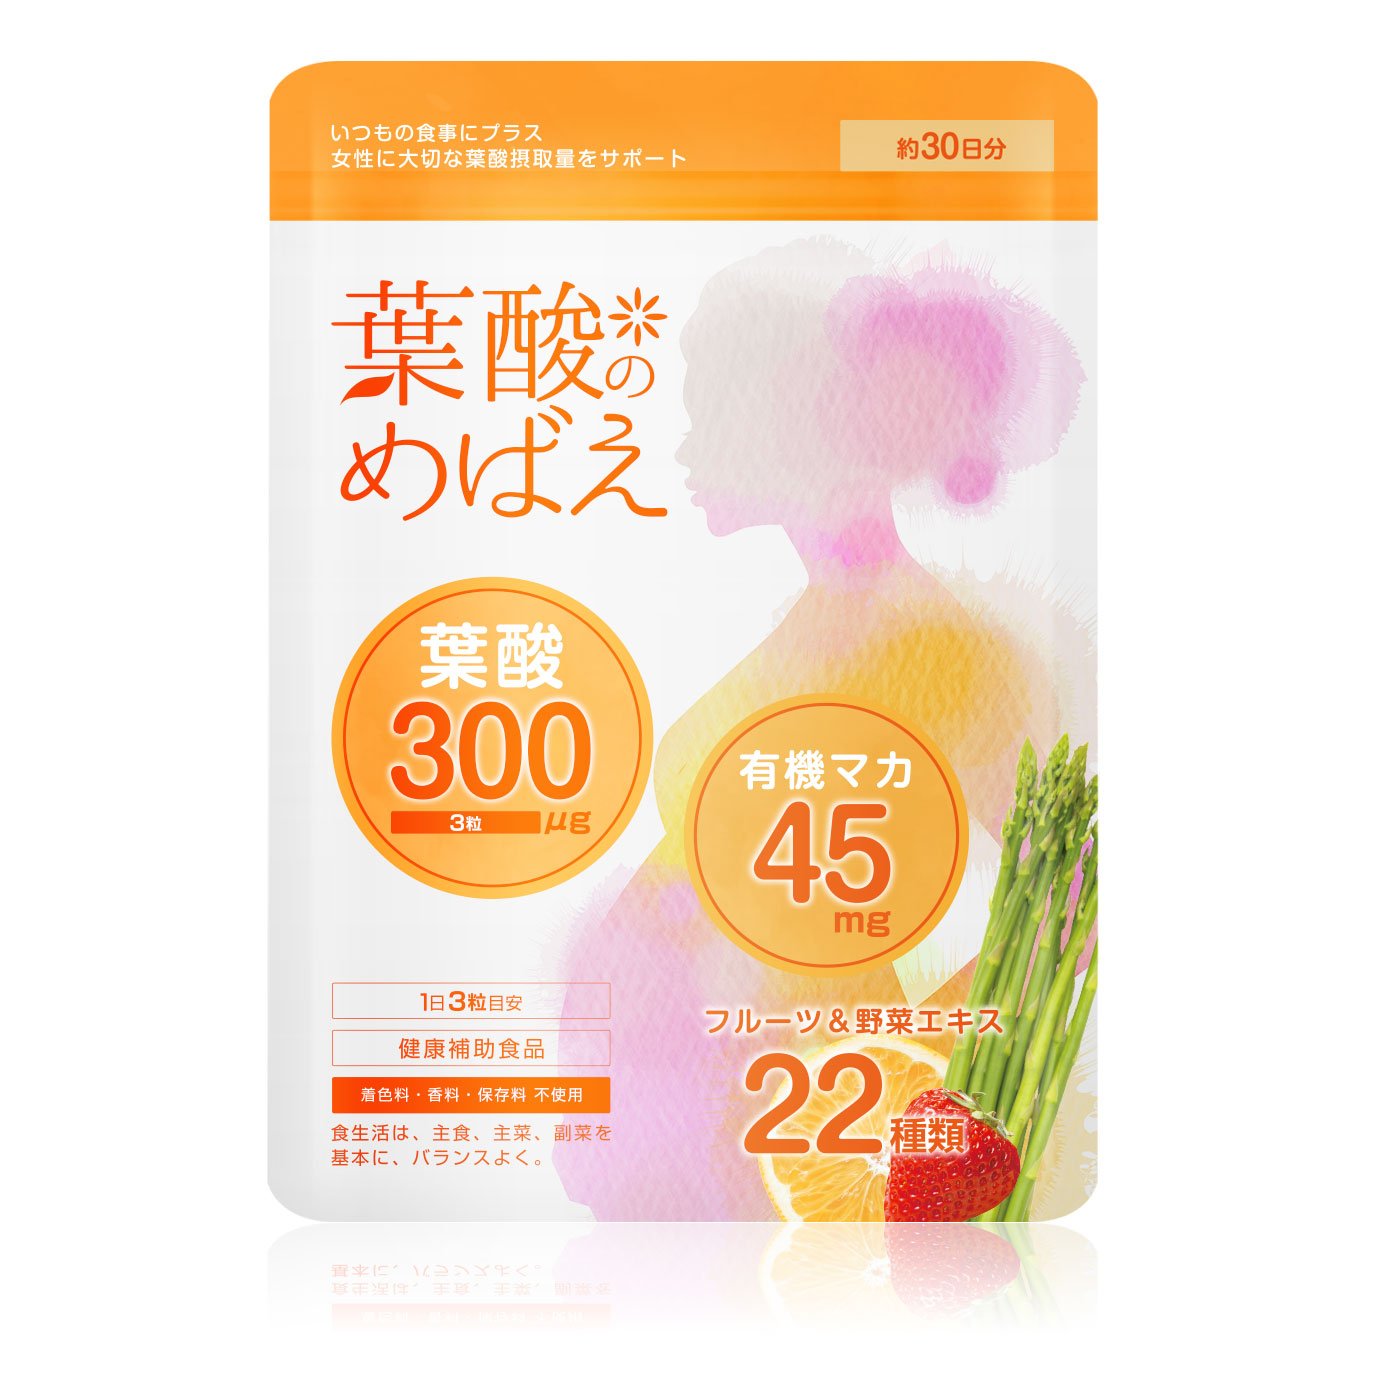 ミタス 葉酸サプリ【定価 1】3袋セット+spbgp44.ru